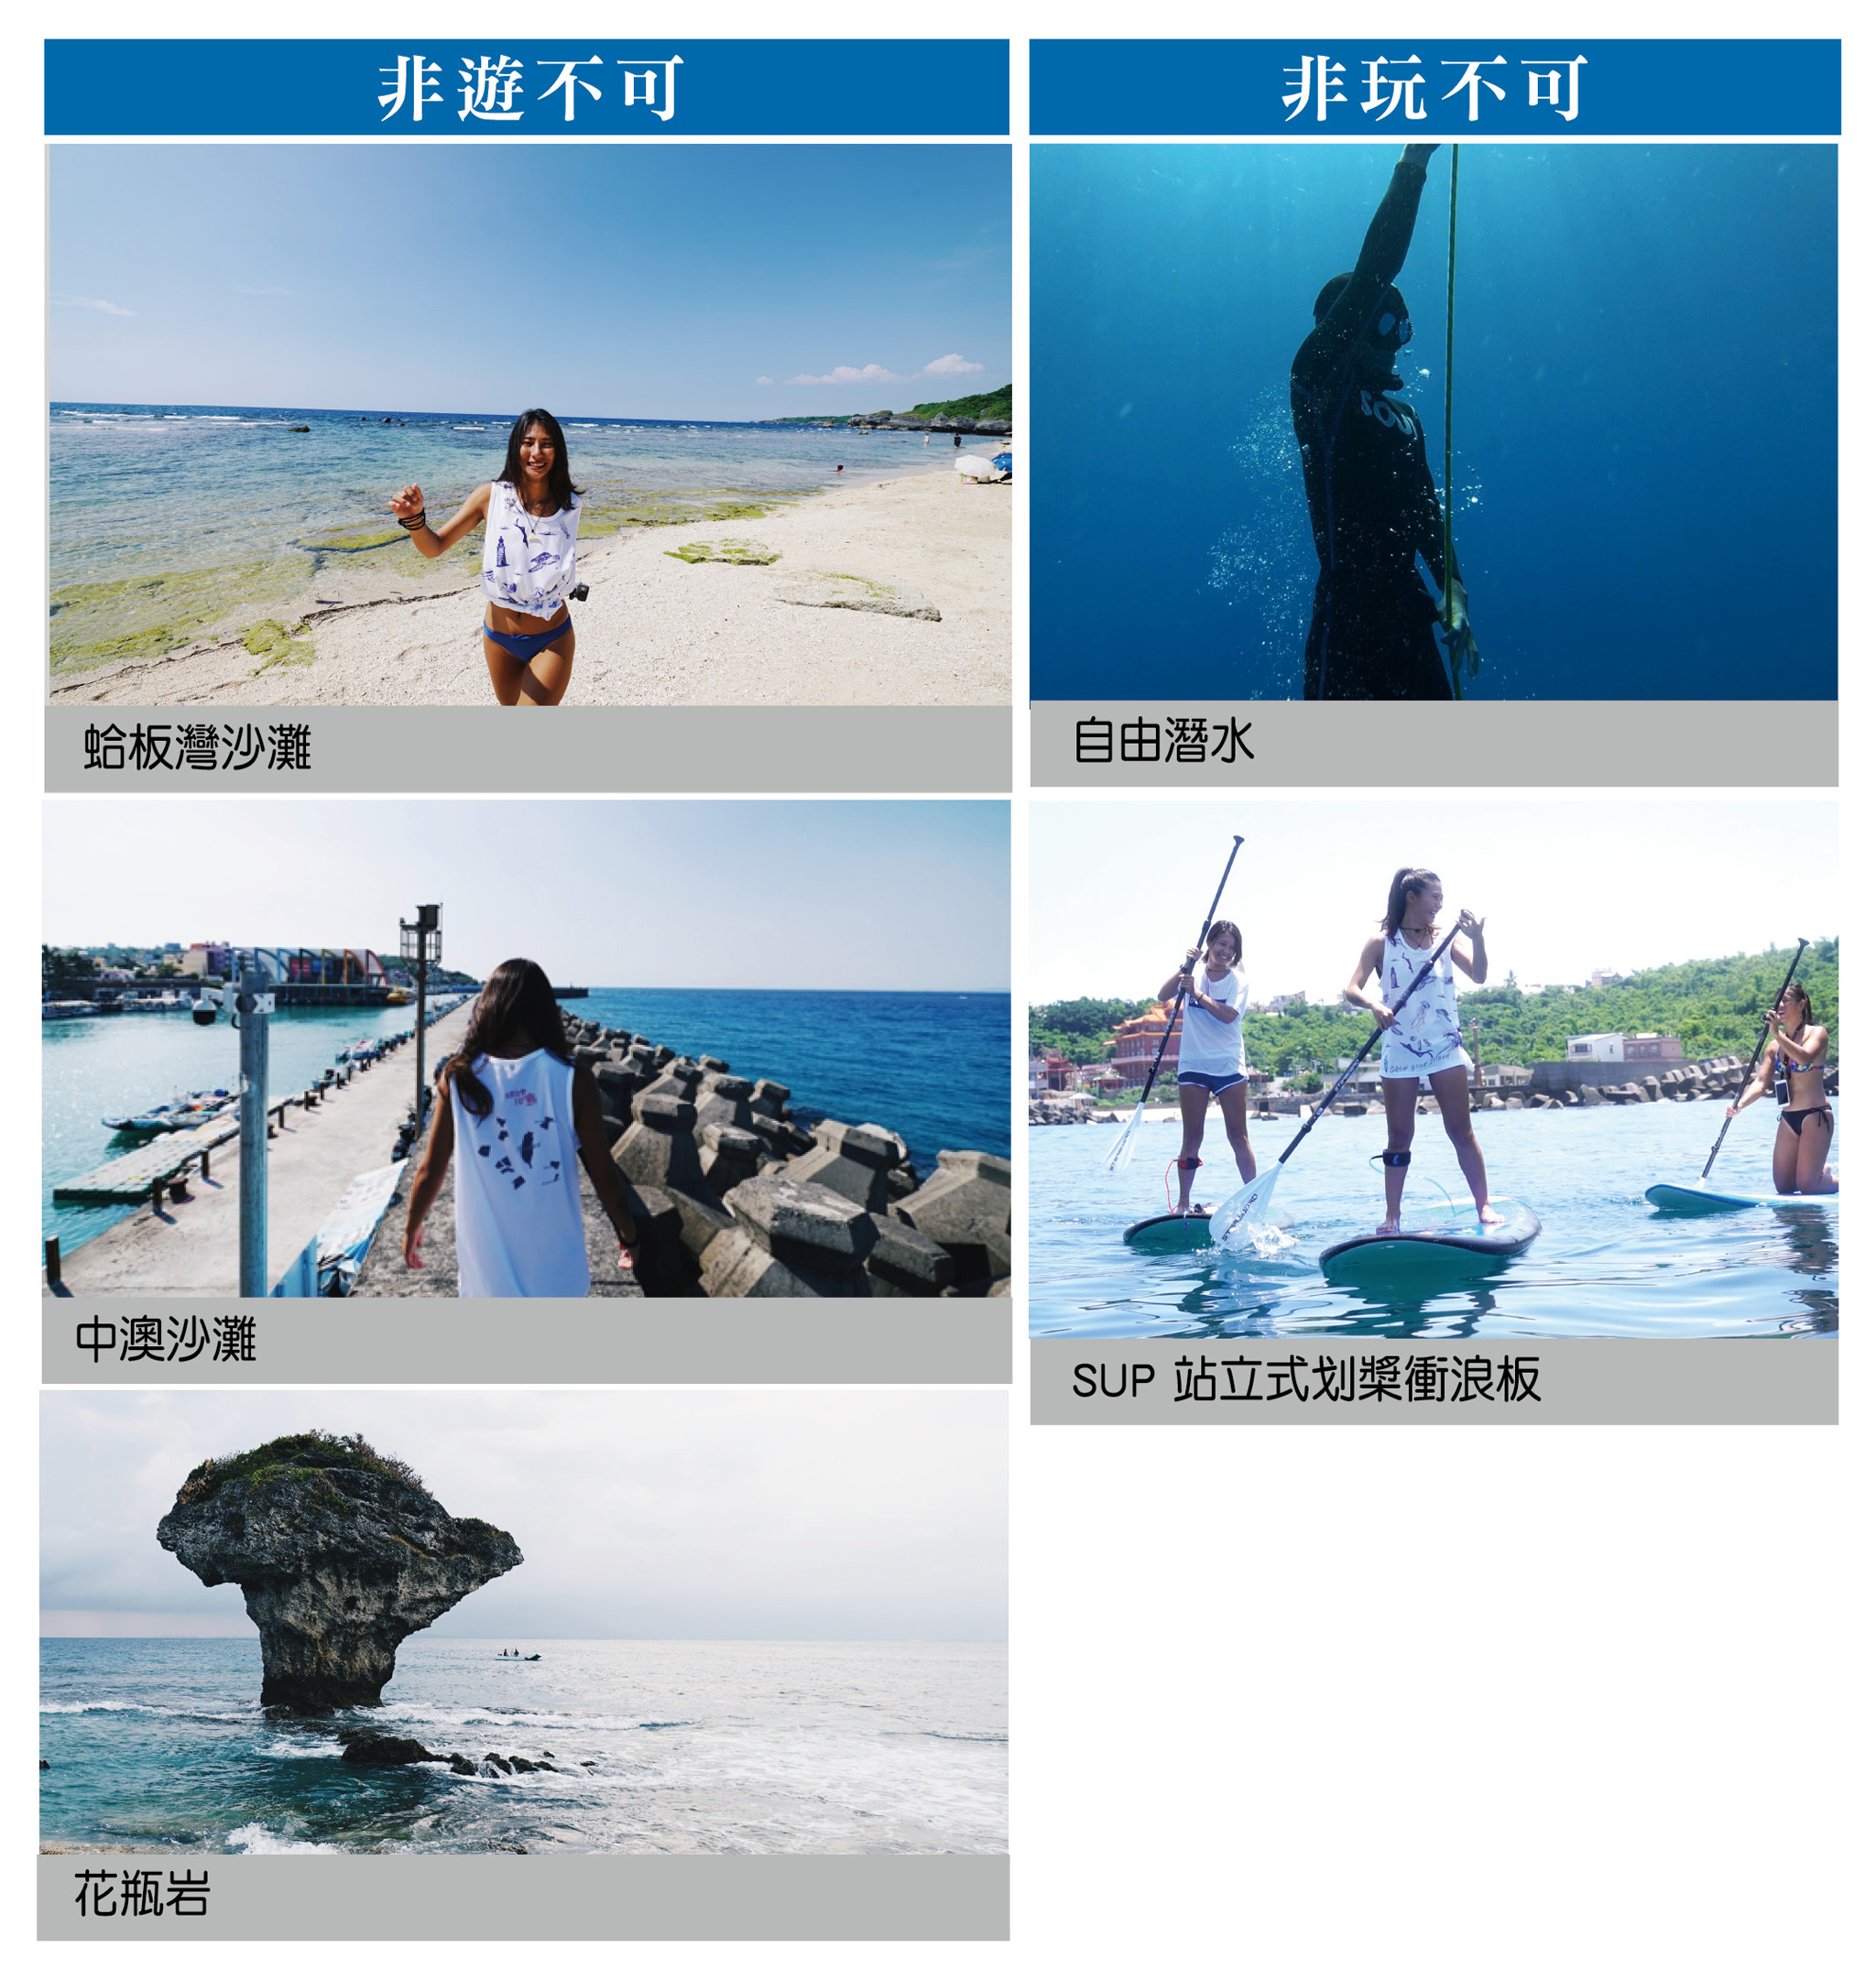 非遊不可：蛤板灣沙灘（左上圖）、中澳沙灘（左中圖）、花瓶岩（左下圖）；非玩不可：自由潛水（右上圖）、SUP 站立式划槳衝浪板（右下圖）。